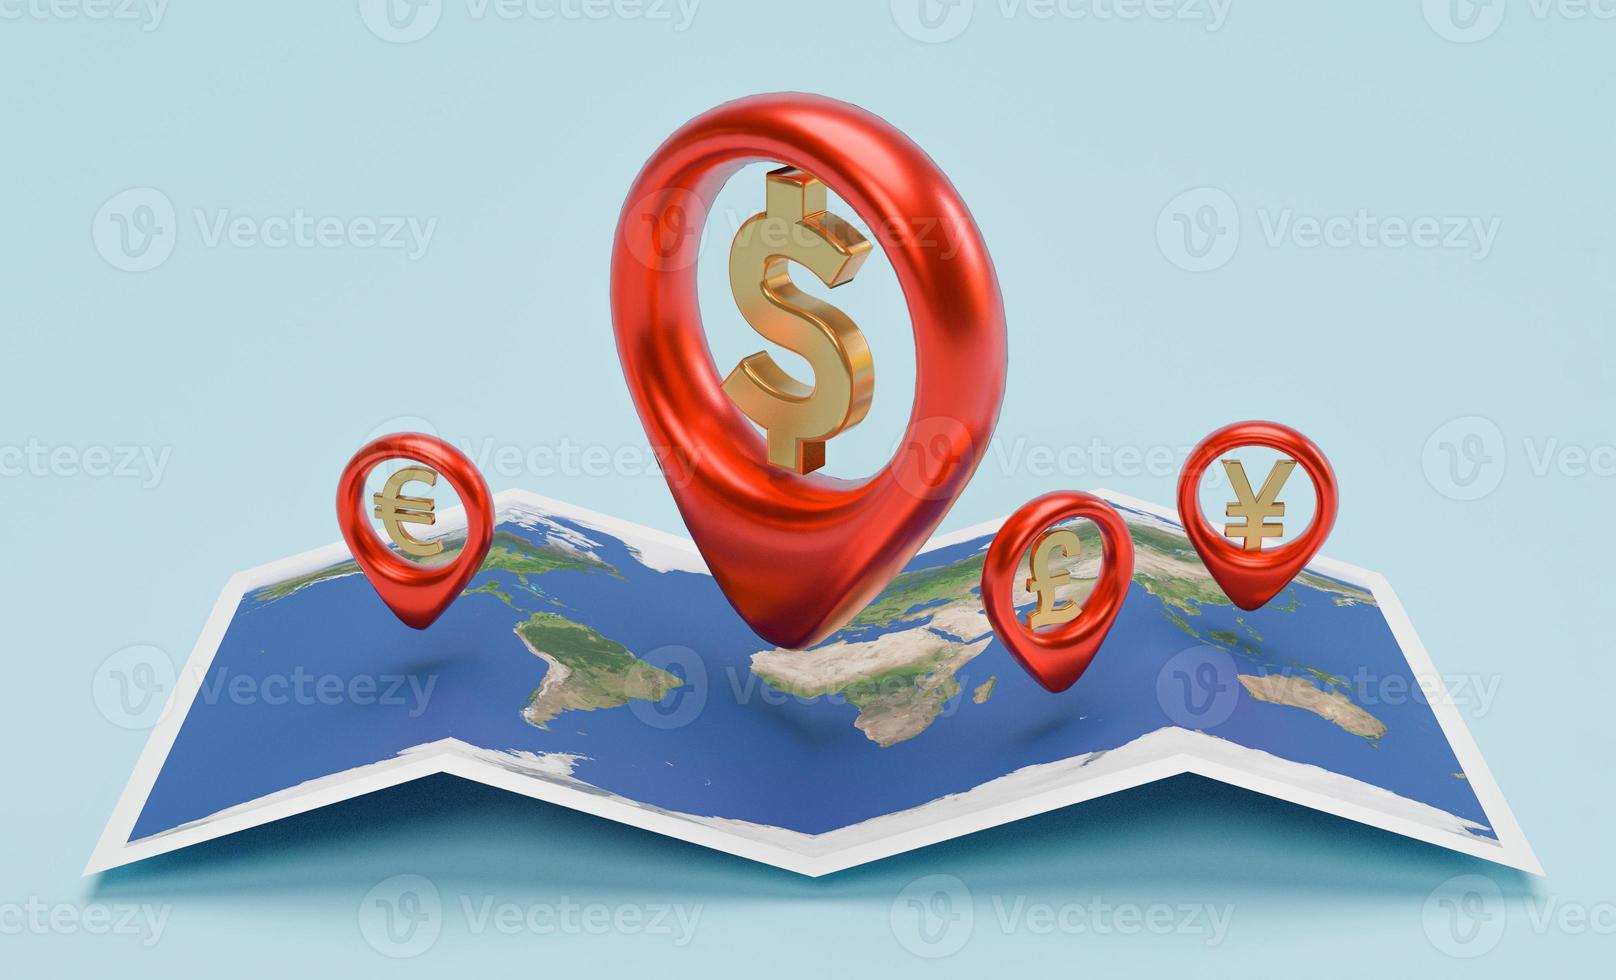 signo de moneda dentro del localizador rojo en el navegador con mapa mundial para transferencia de dinero y concepto de cambio de divisas. elemento de esta imagen de la nasa y representación 3d. foto